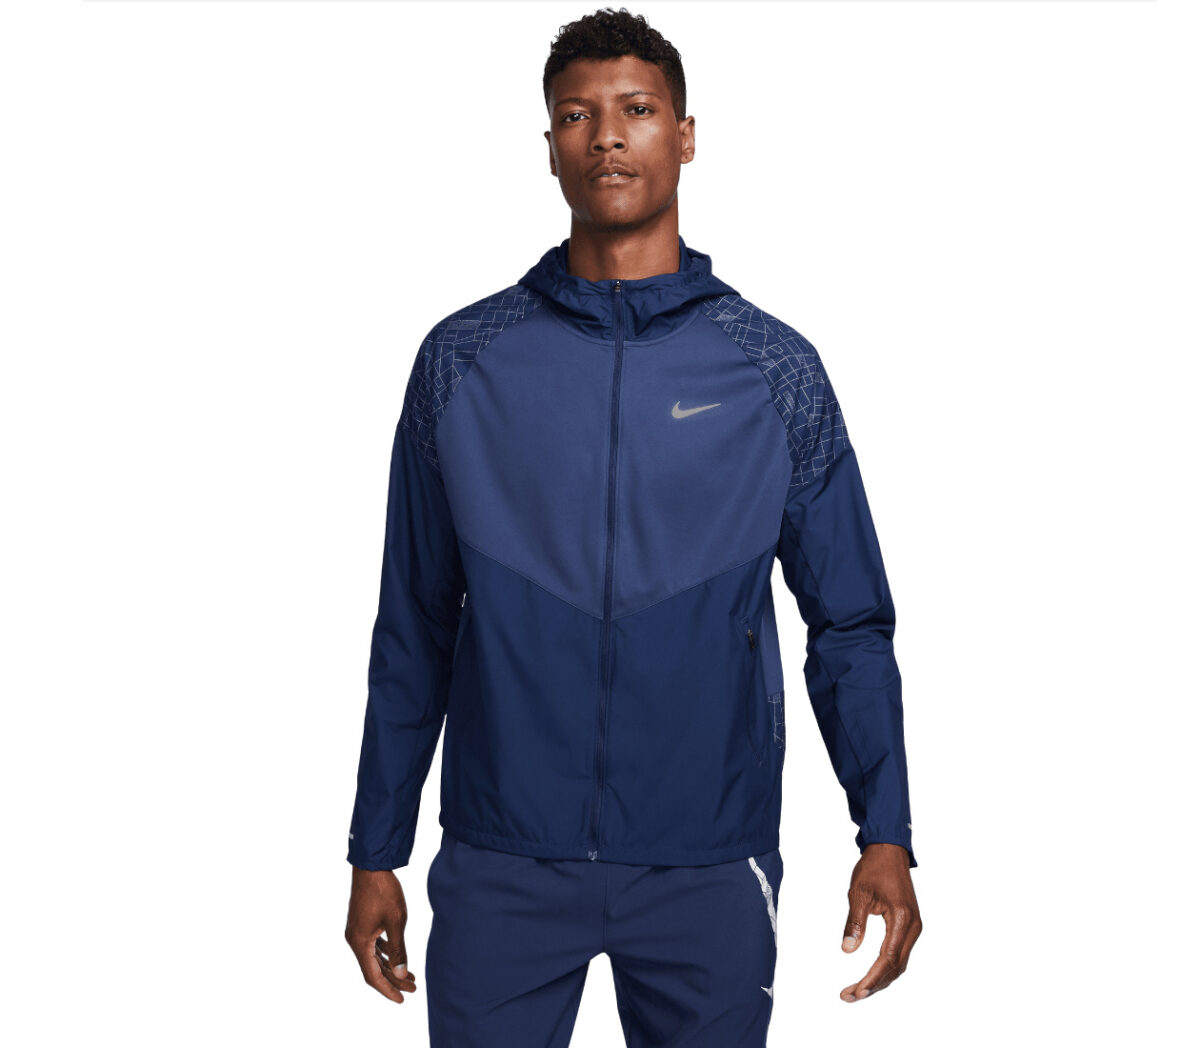 Giacca Nike Run Division Miler Flash Running Jacket uomo blu